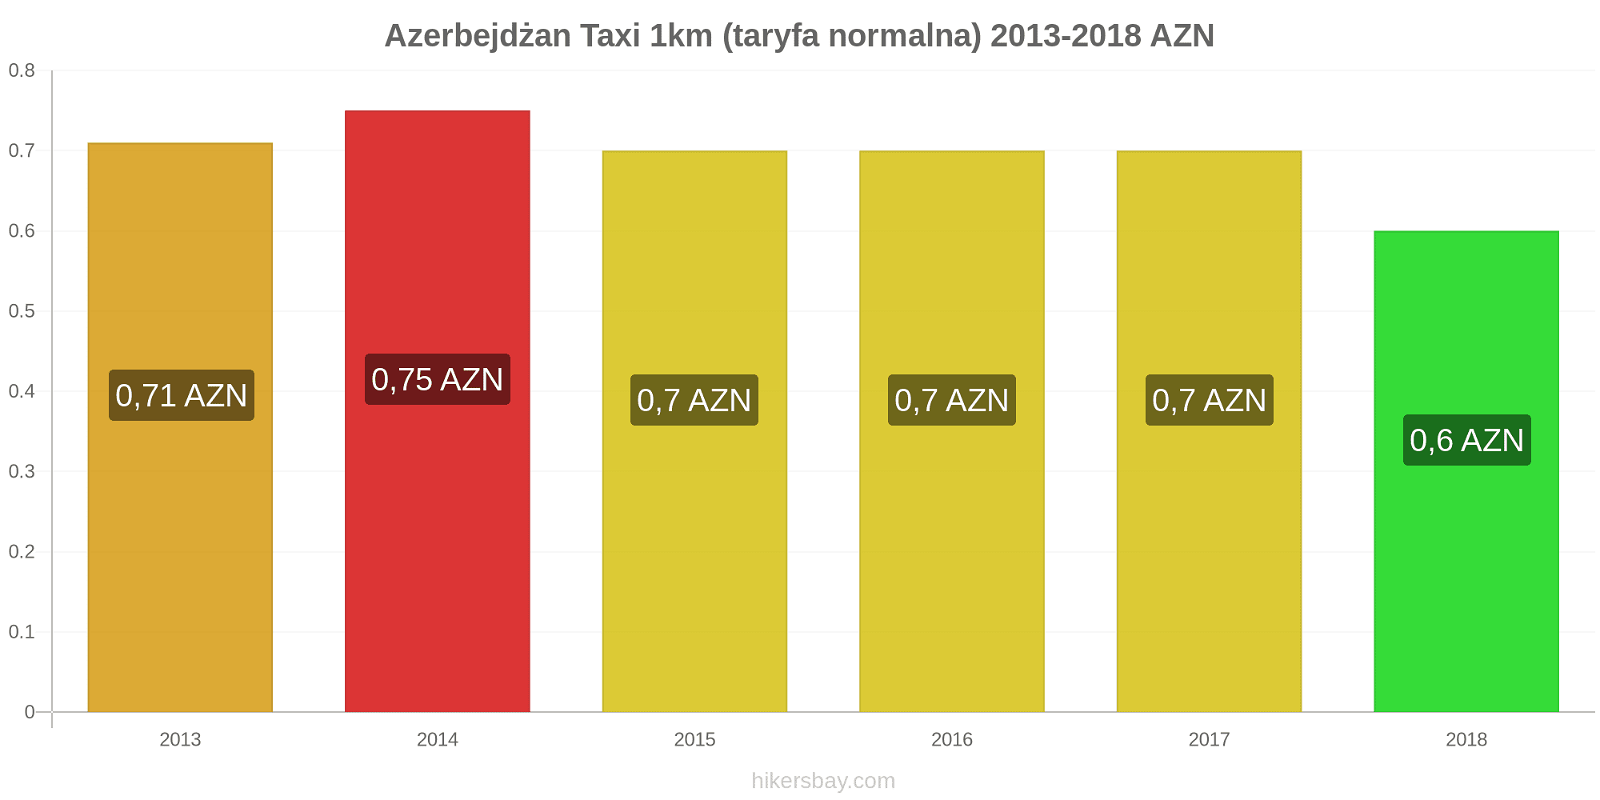 Azerbejdżan zmiany cen Taxi 1km (taryfa normalna) hikersbay.com